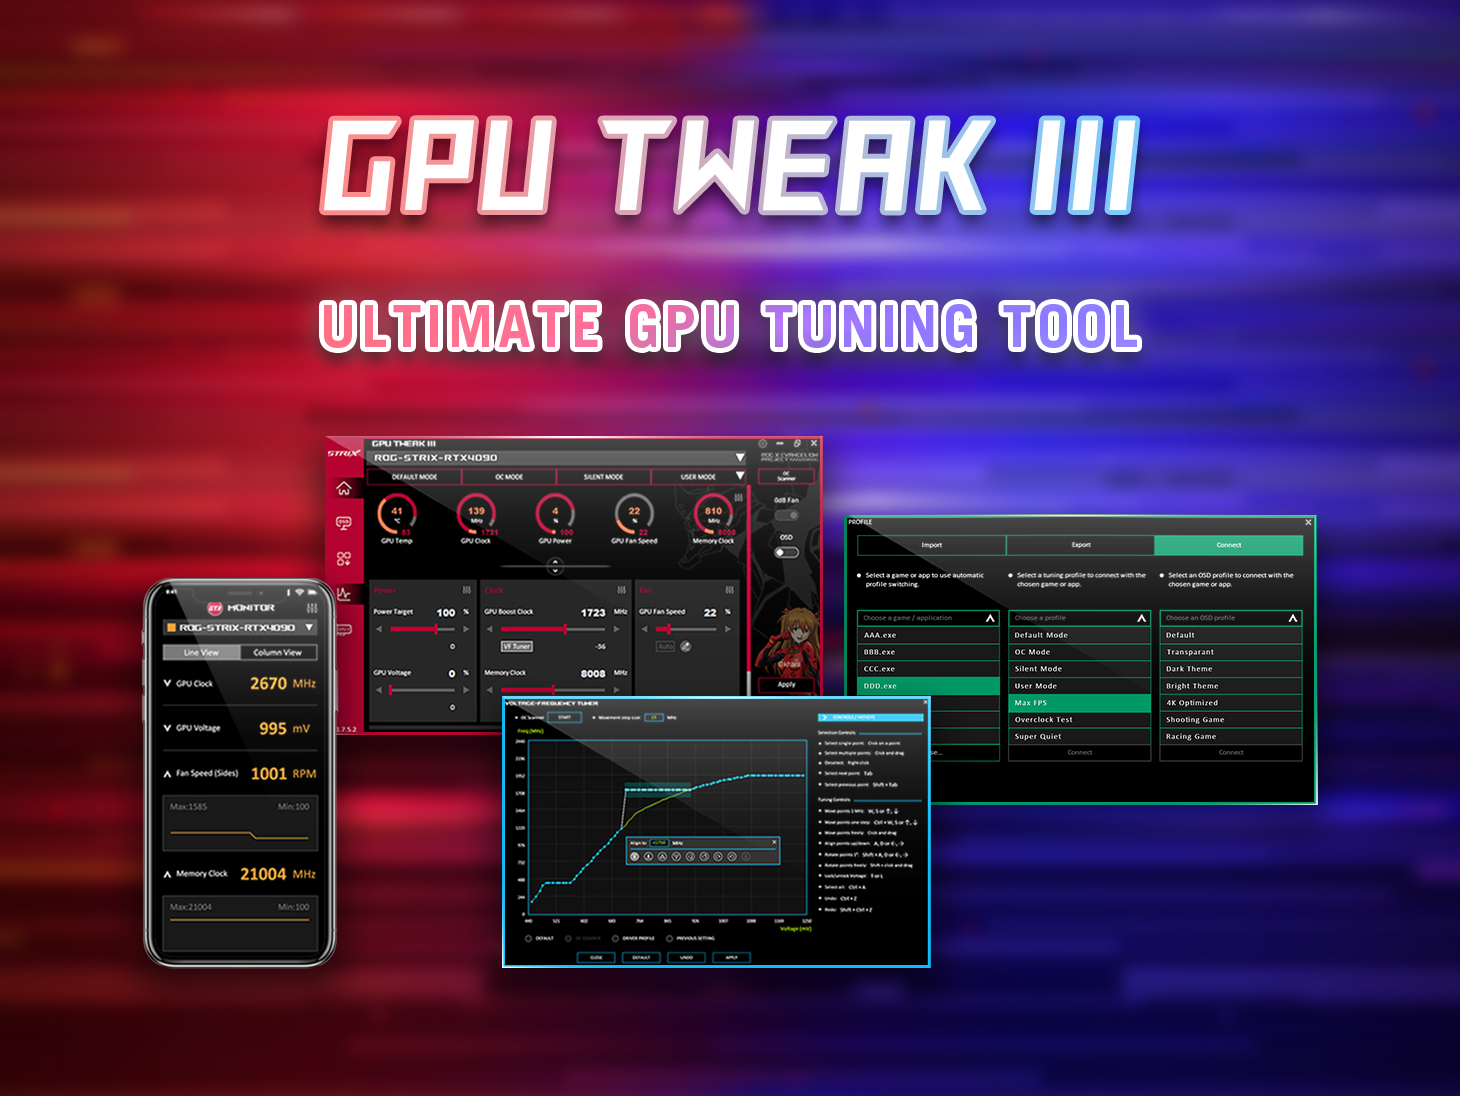 ASUS GPU Tweak III key visual